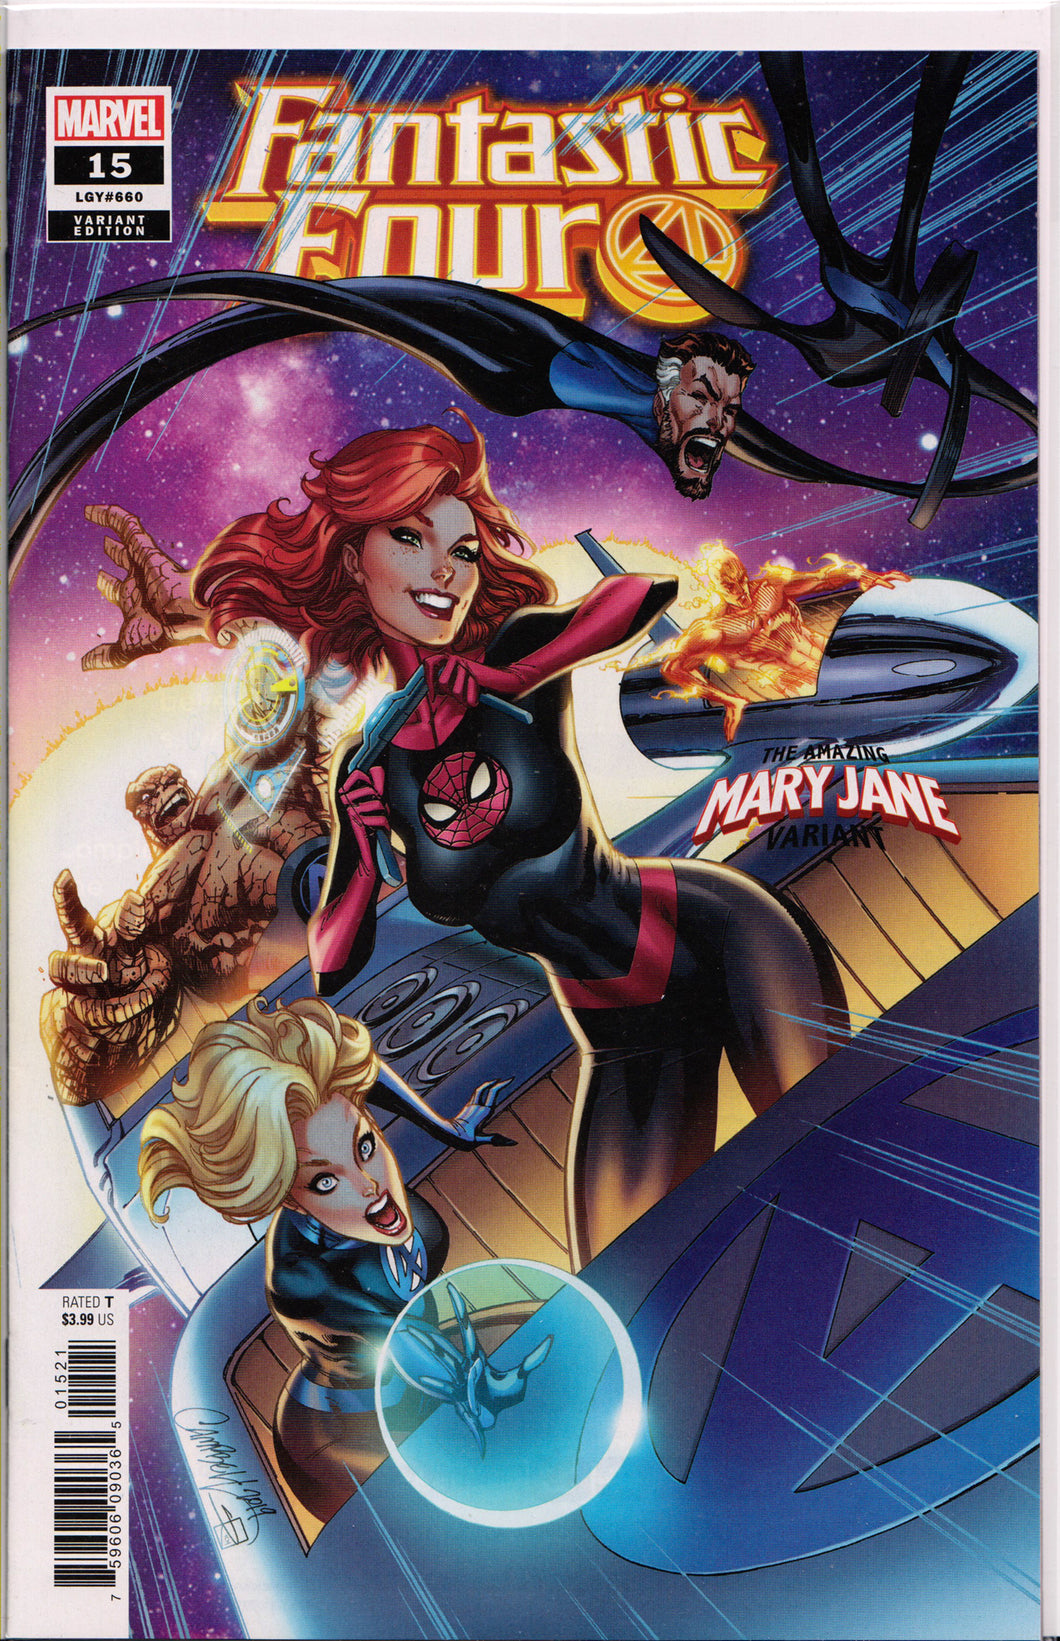 FANTASTIC FOUR #15 (J. SCOTT CAMPBELL VARIANT)(2019) ~ Marvel Comics